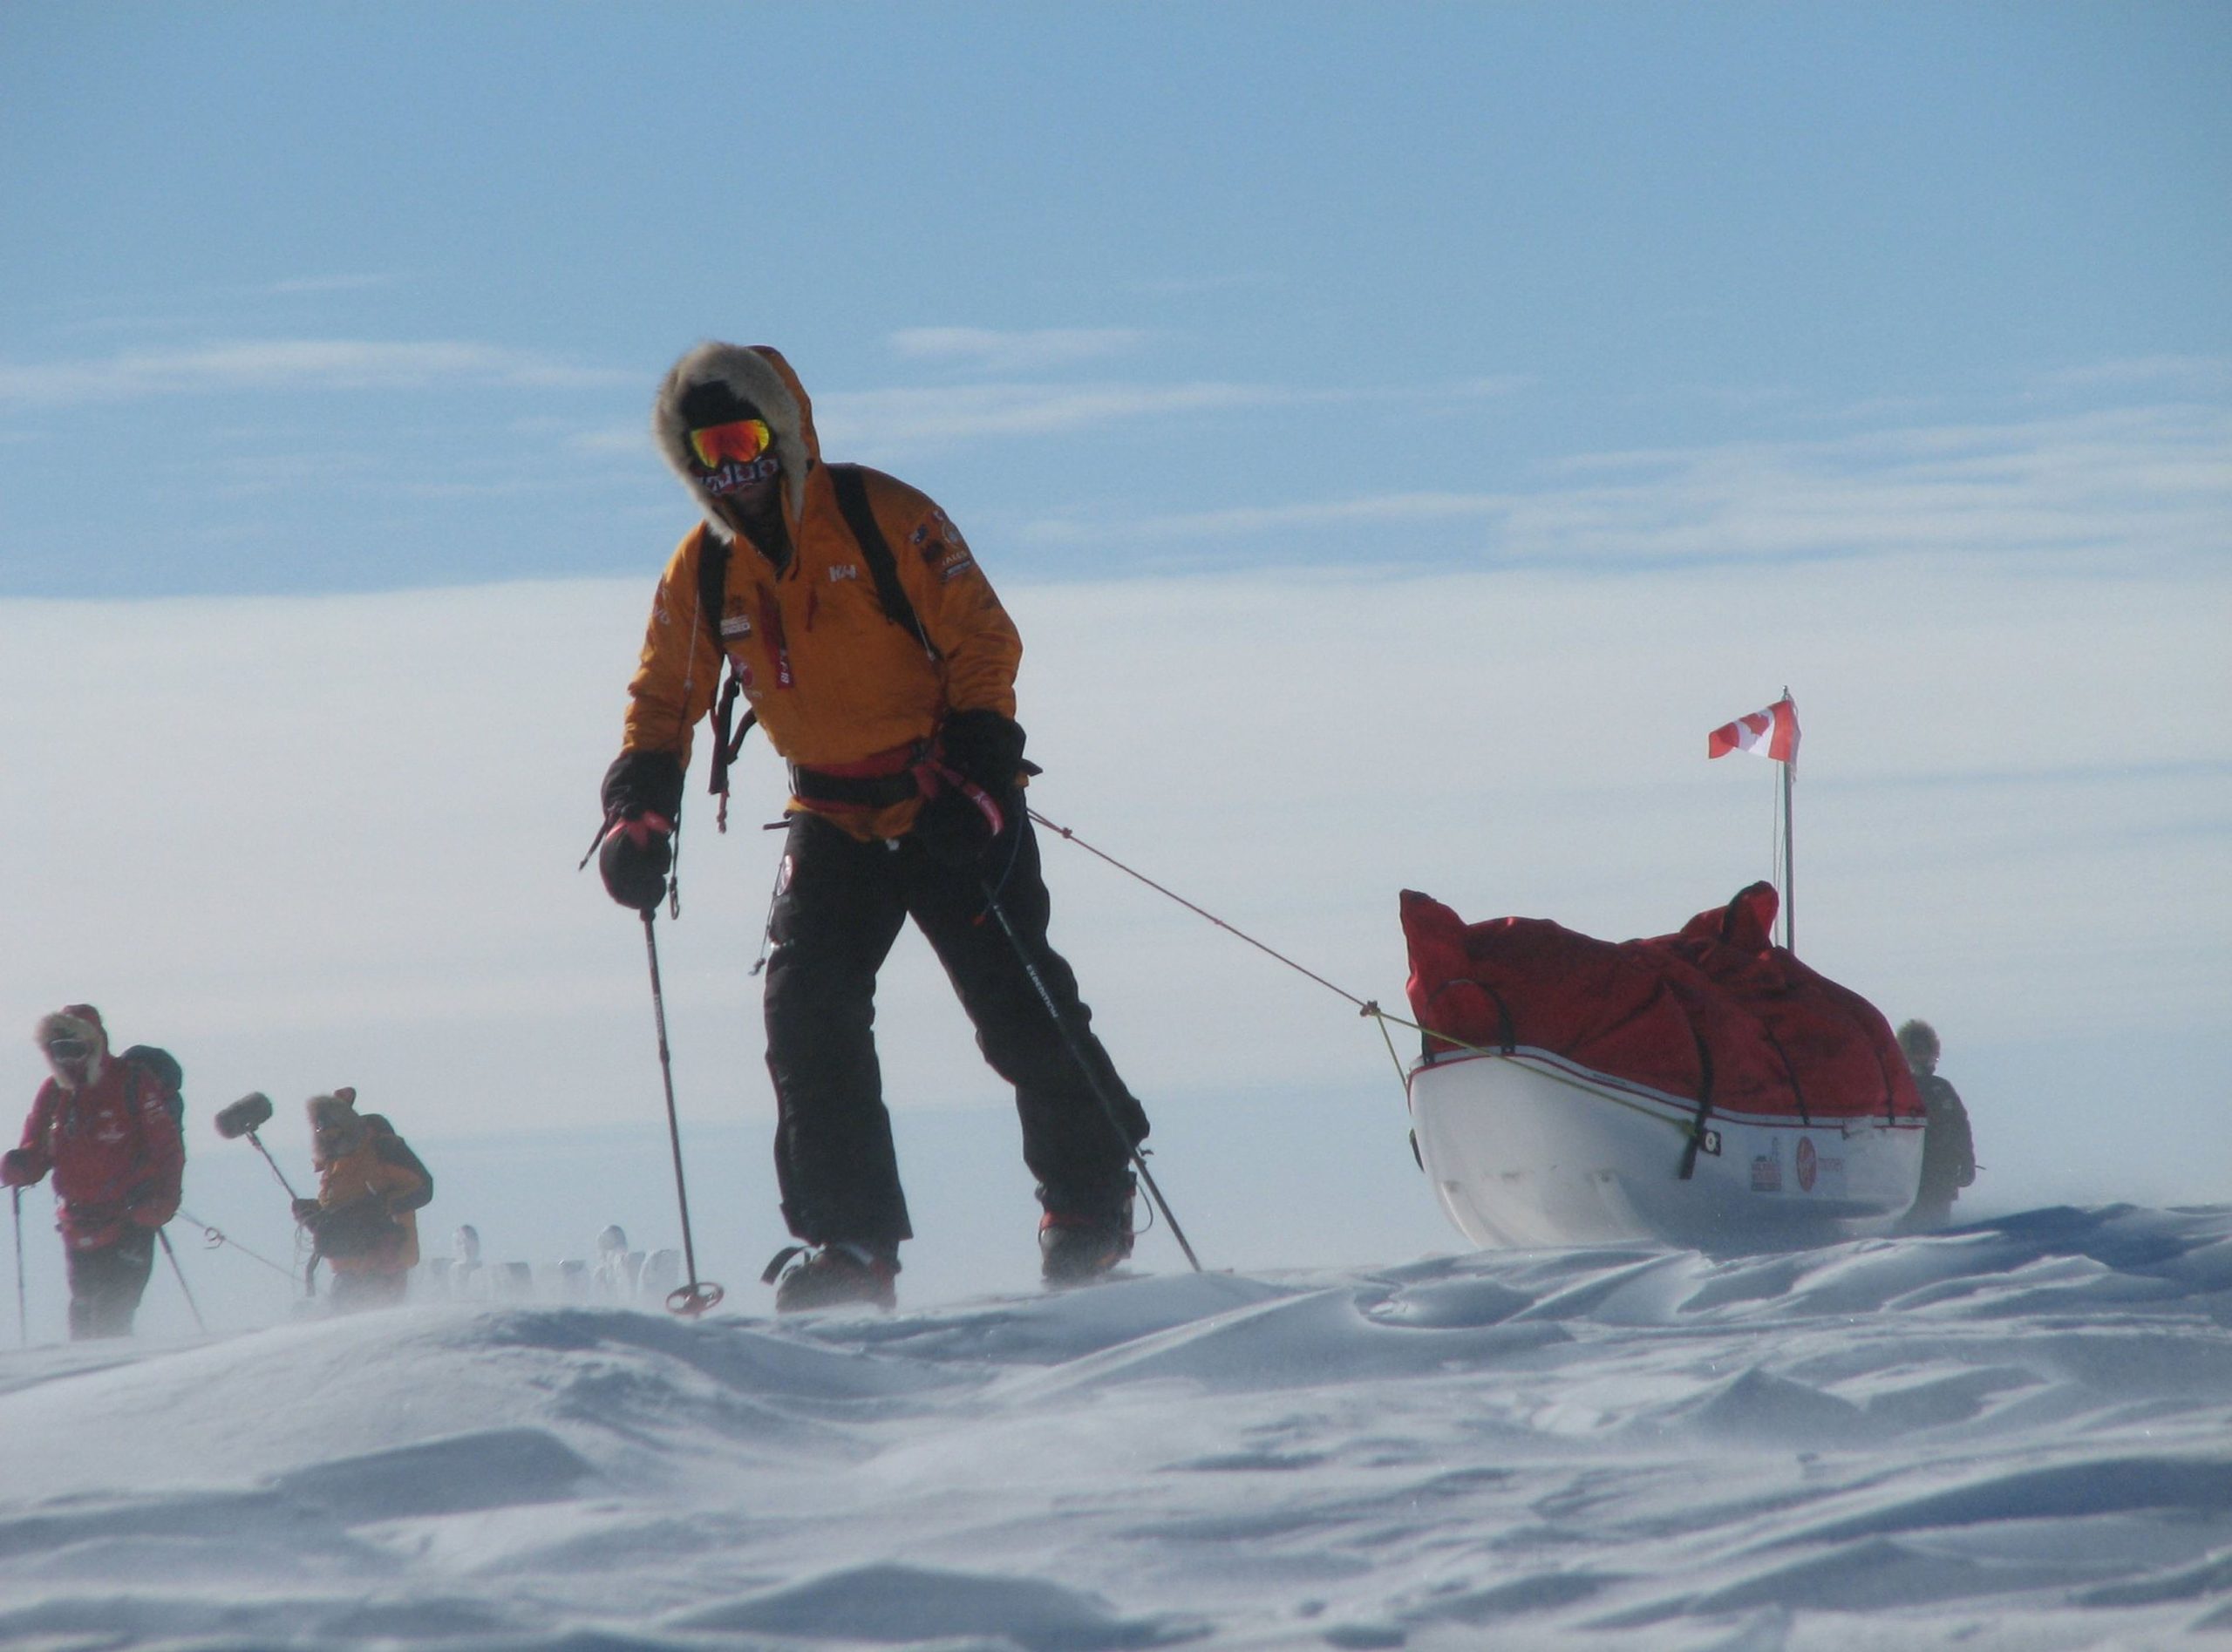 سورتمه سواری در قطب - عکس قطب جنوب